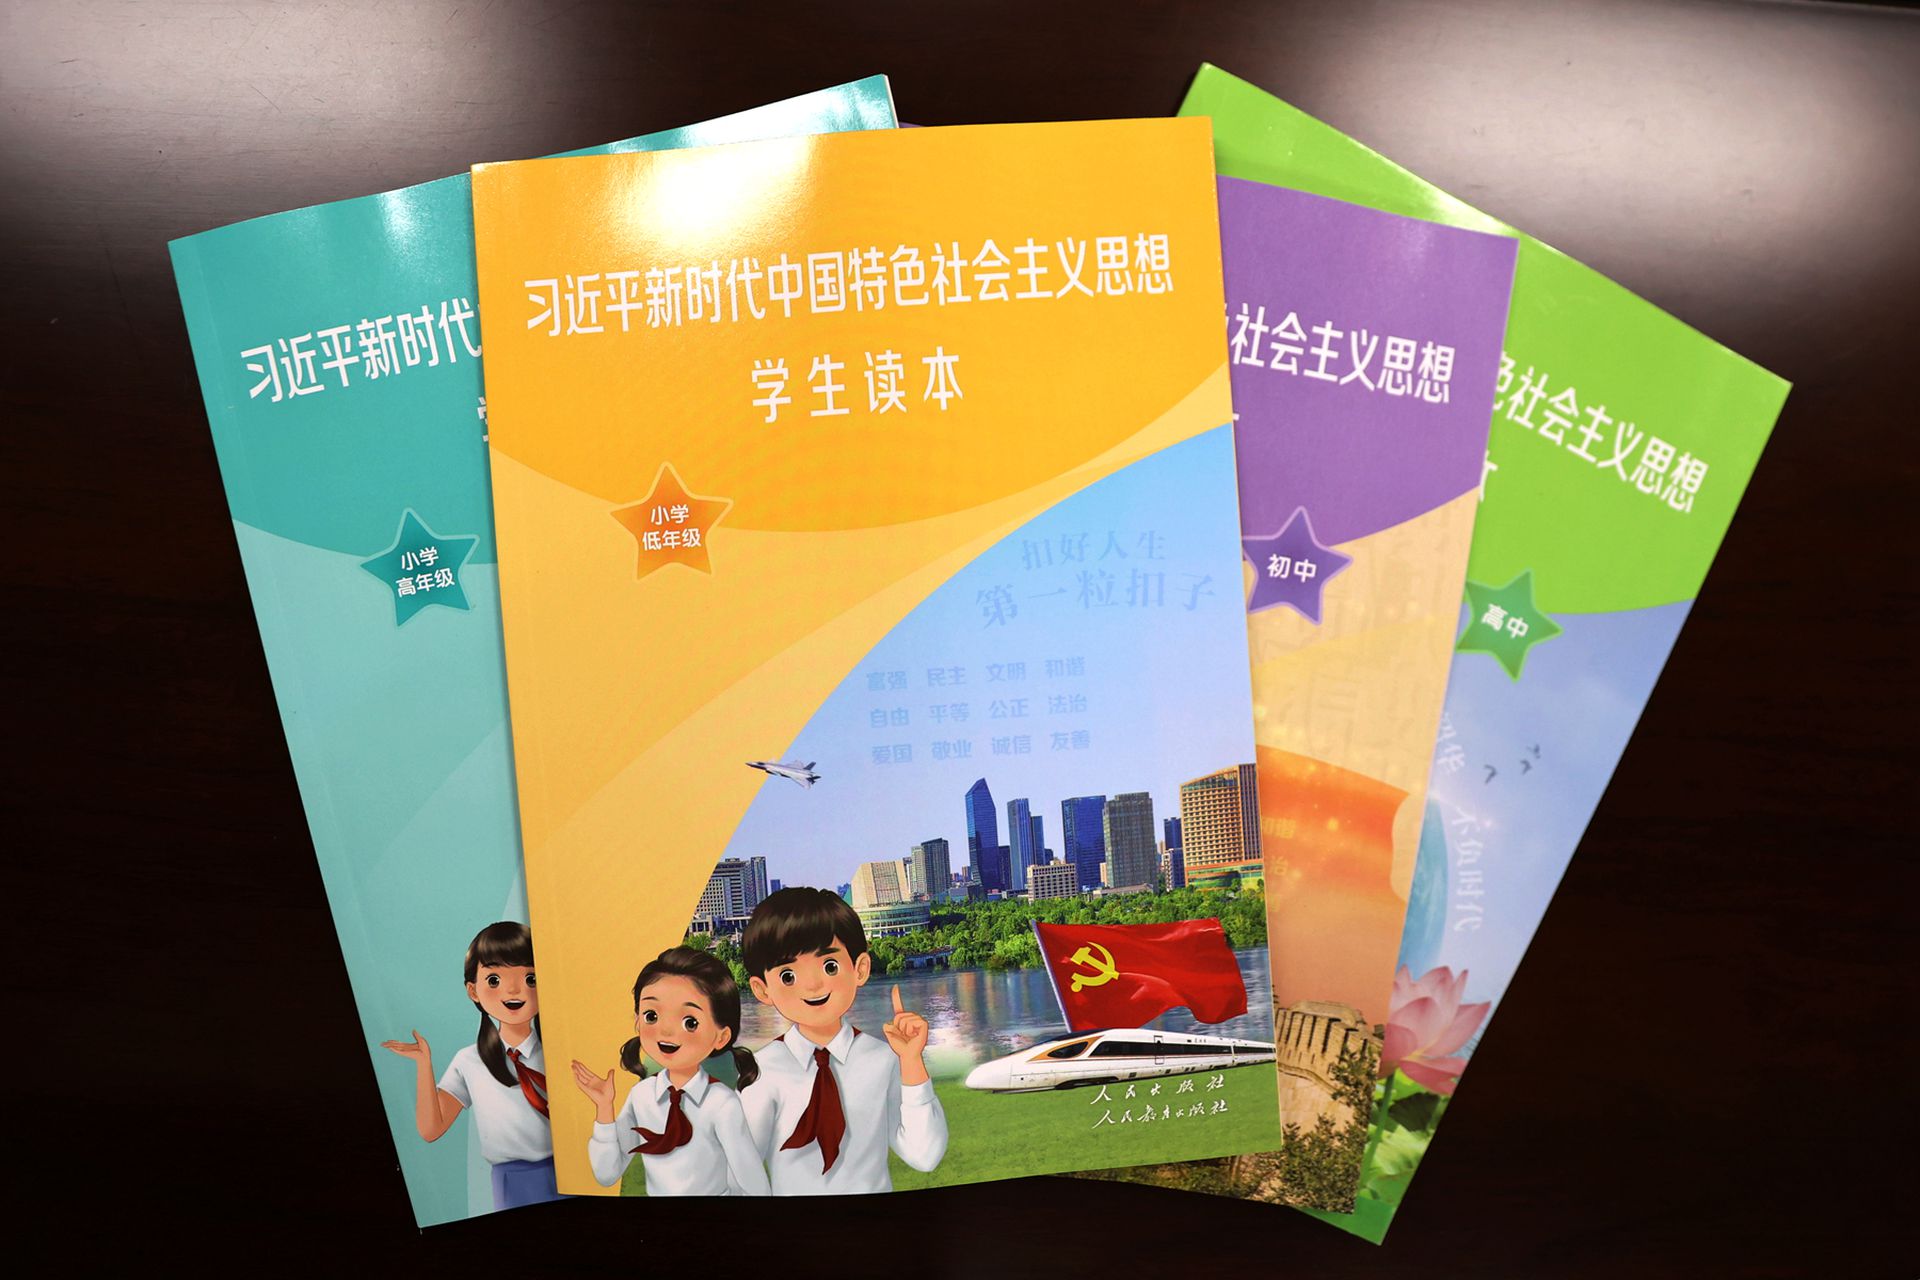 习思想读本成内地中小学重点教材内容包含解决台湾问题 多维新闻 中国